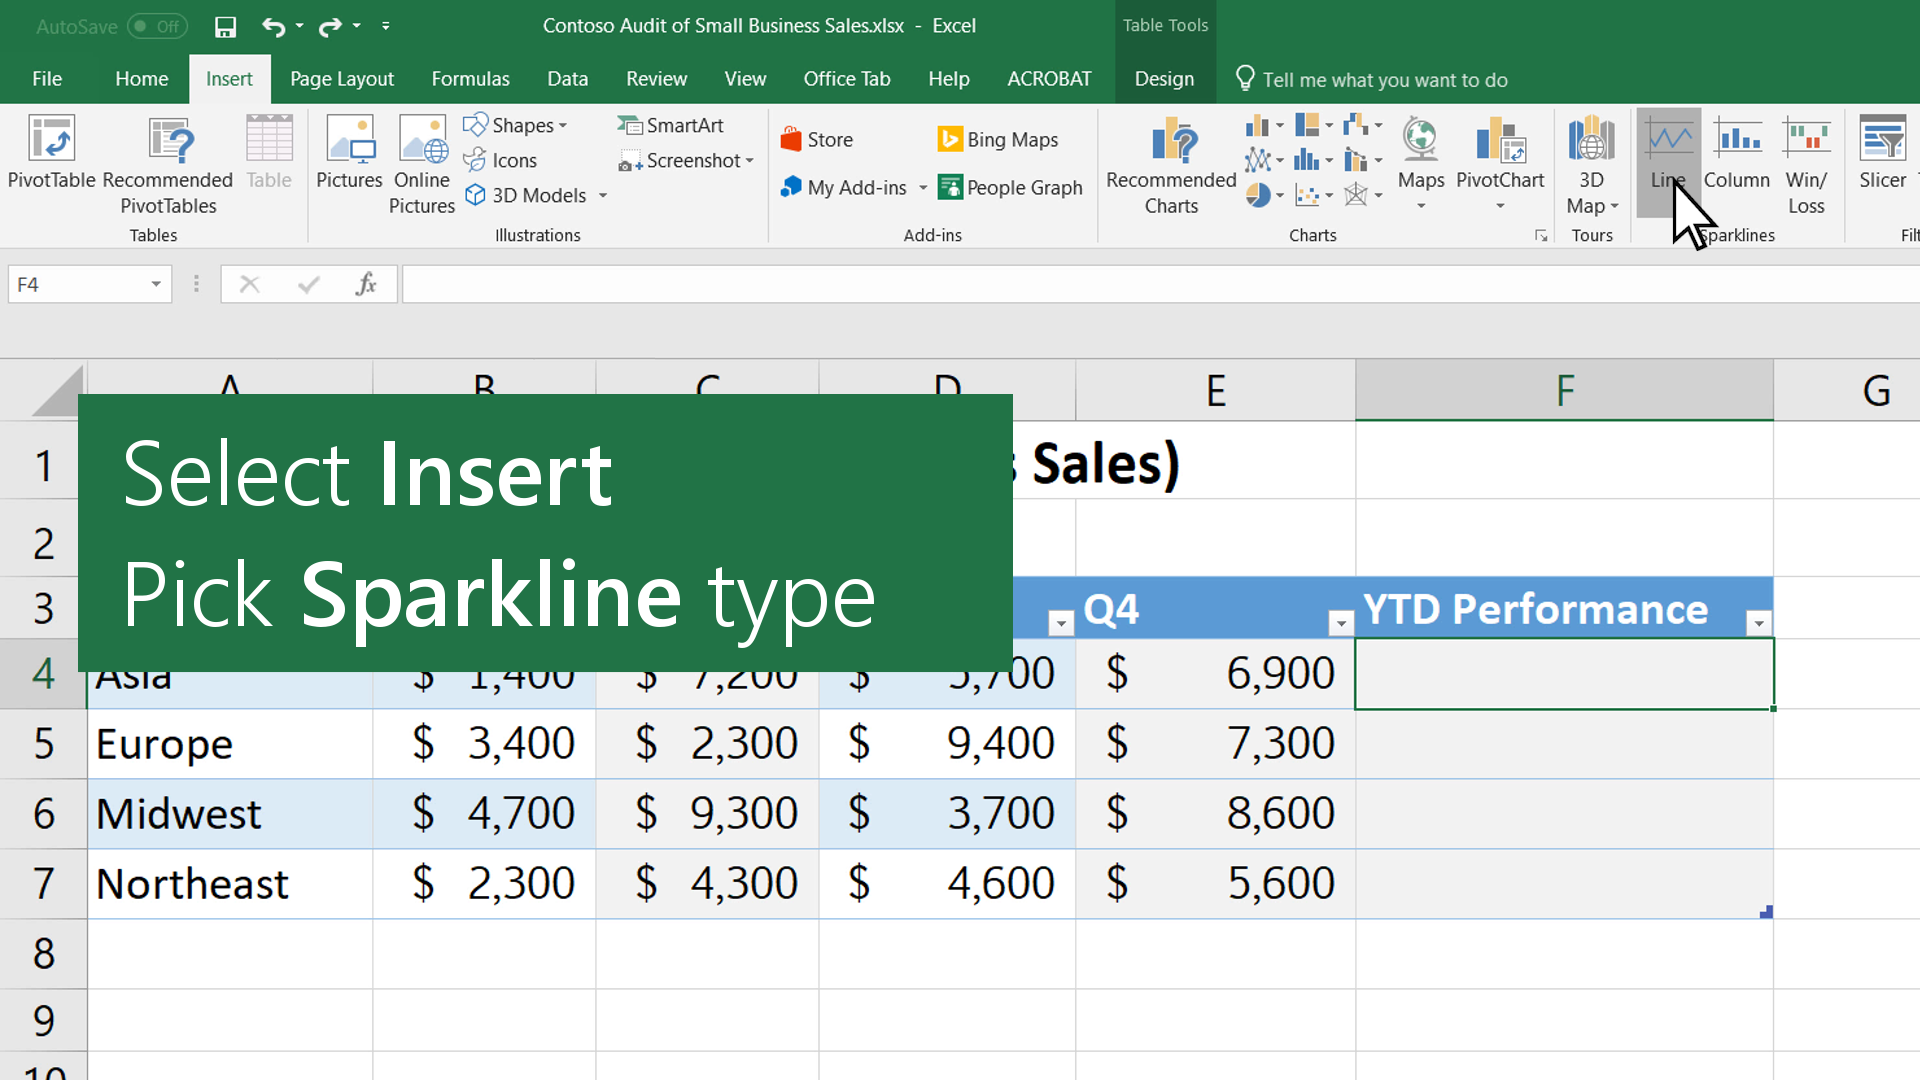 Biểu đồ thu nhỏ: Hãy khám phá với chúng tôi cách tạo biểu đồ thu nhỏ đẹp mắt trong Excel để phân tích dữ liệu một cách dễ dàng và hiệu quả.